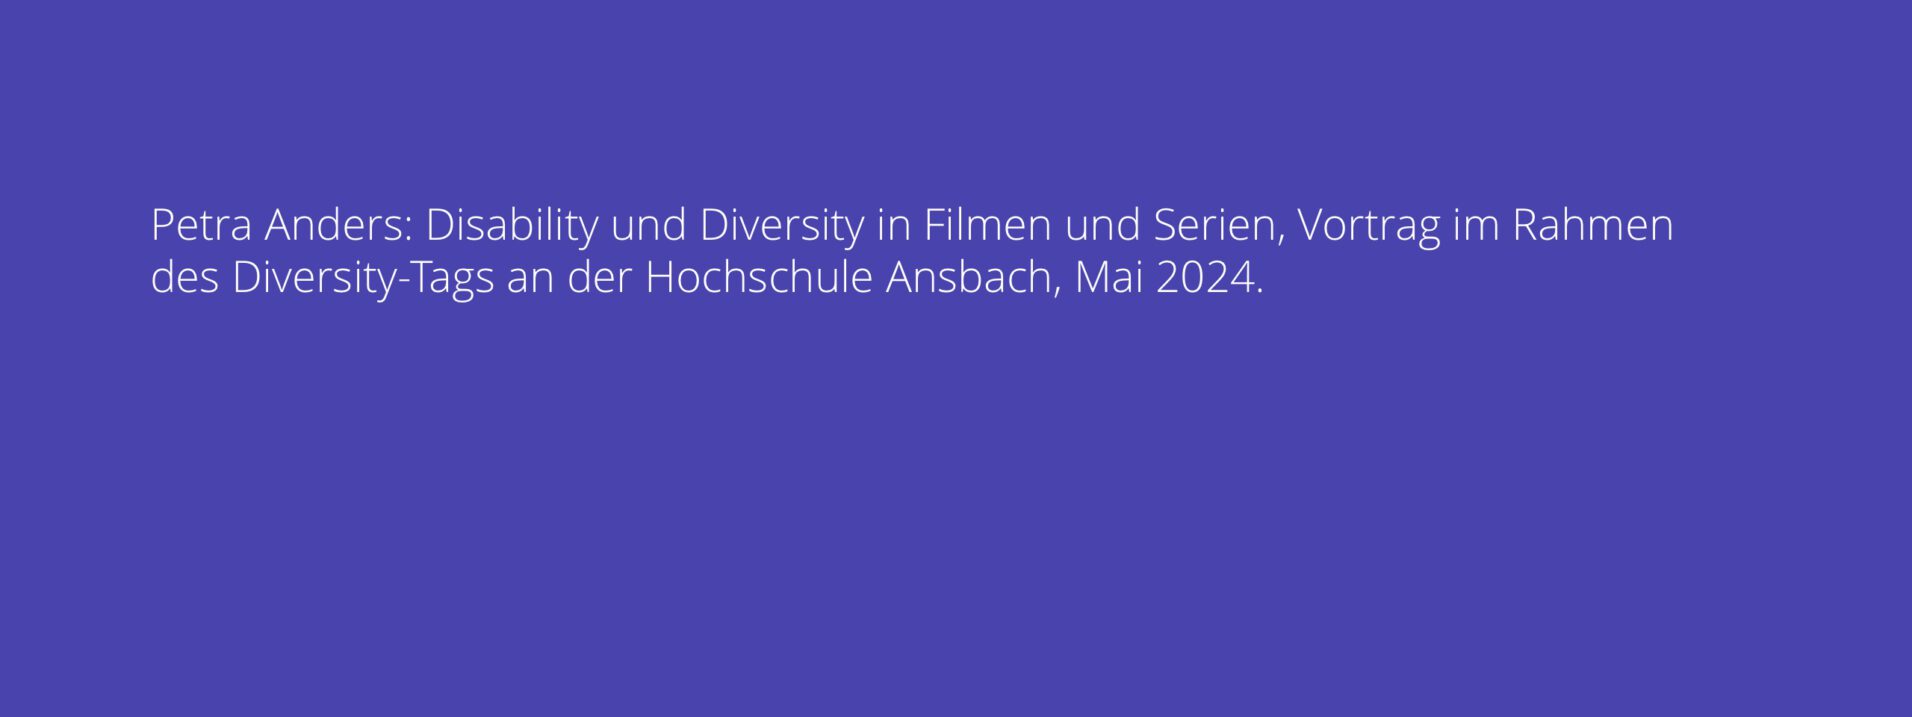 Petra Anders: Disability und Diversity in Filmen und Serien, Vortrag im Rahmen des Diversity-Tags an der Hochschule Ansbach, Mai 2024